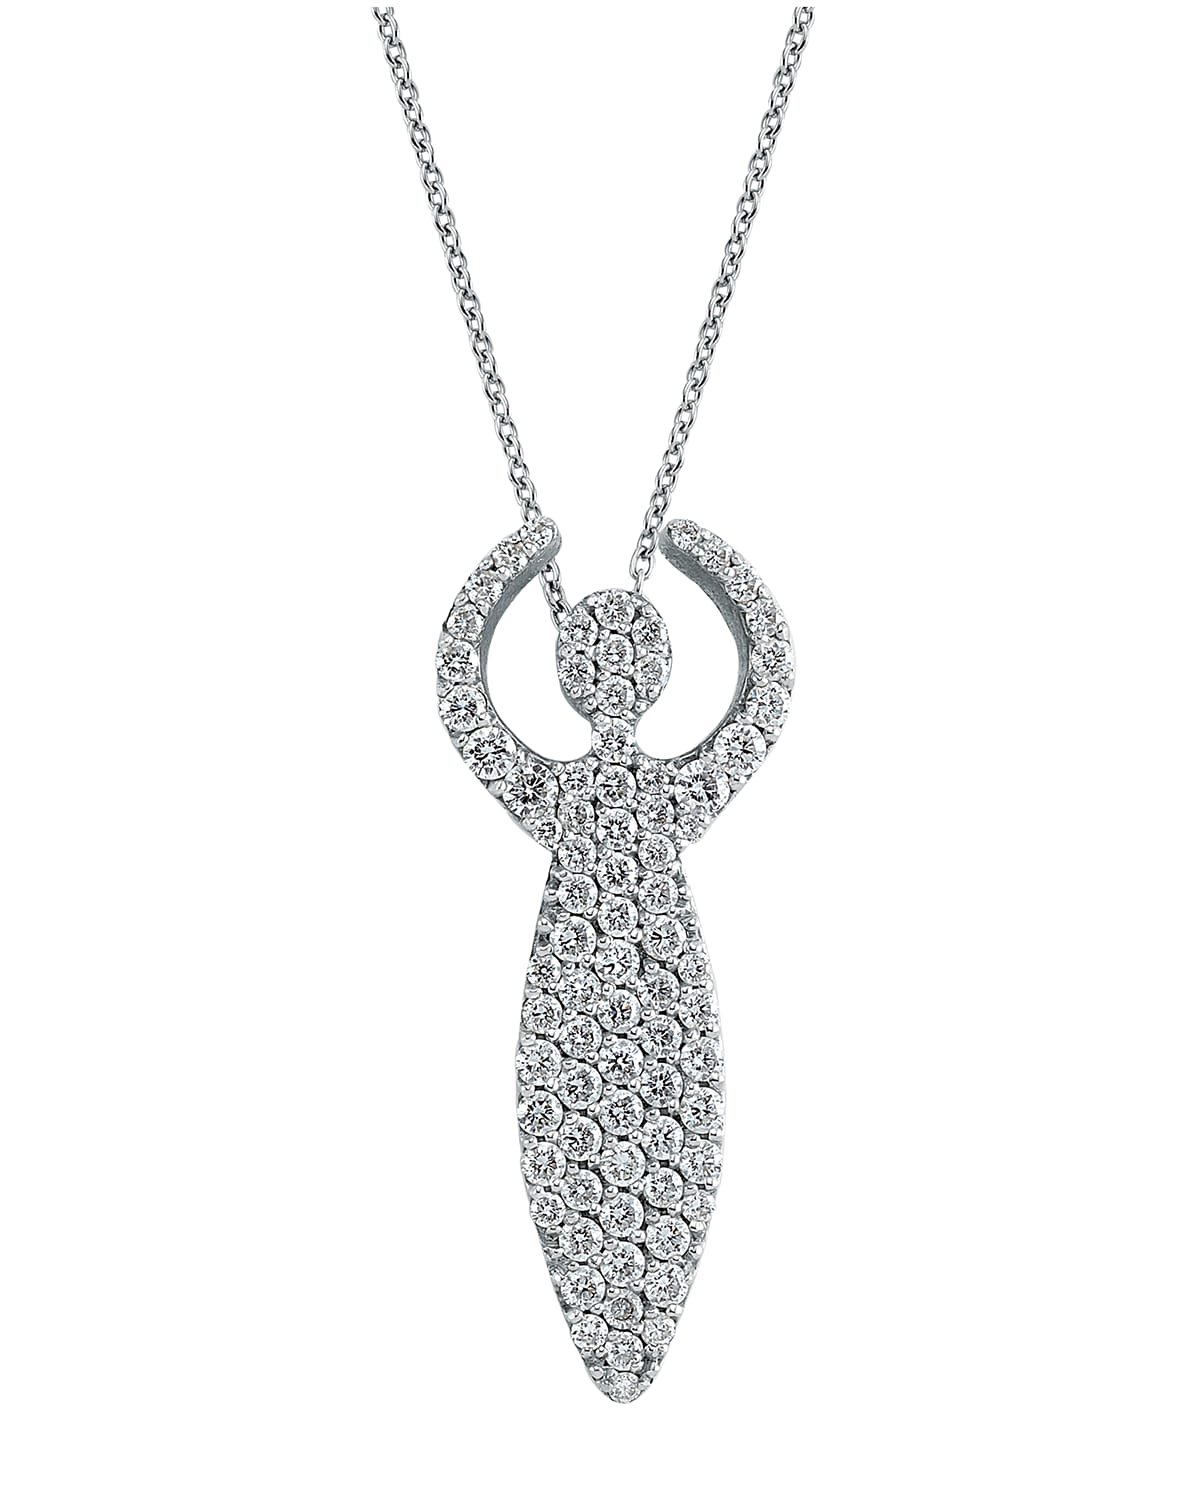 BeeGoddess 14k White Gold Diamond Goddess Necklace